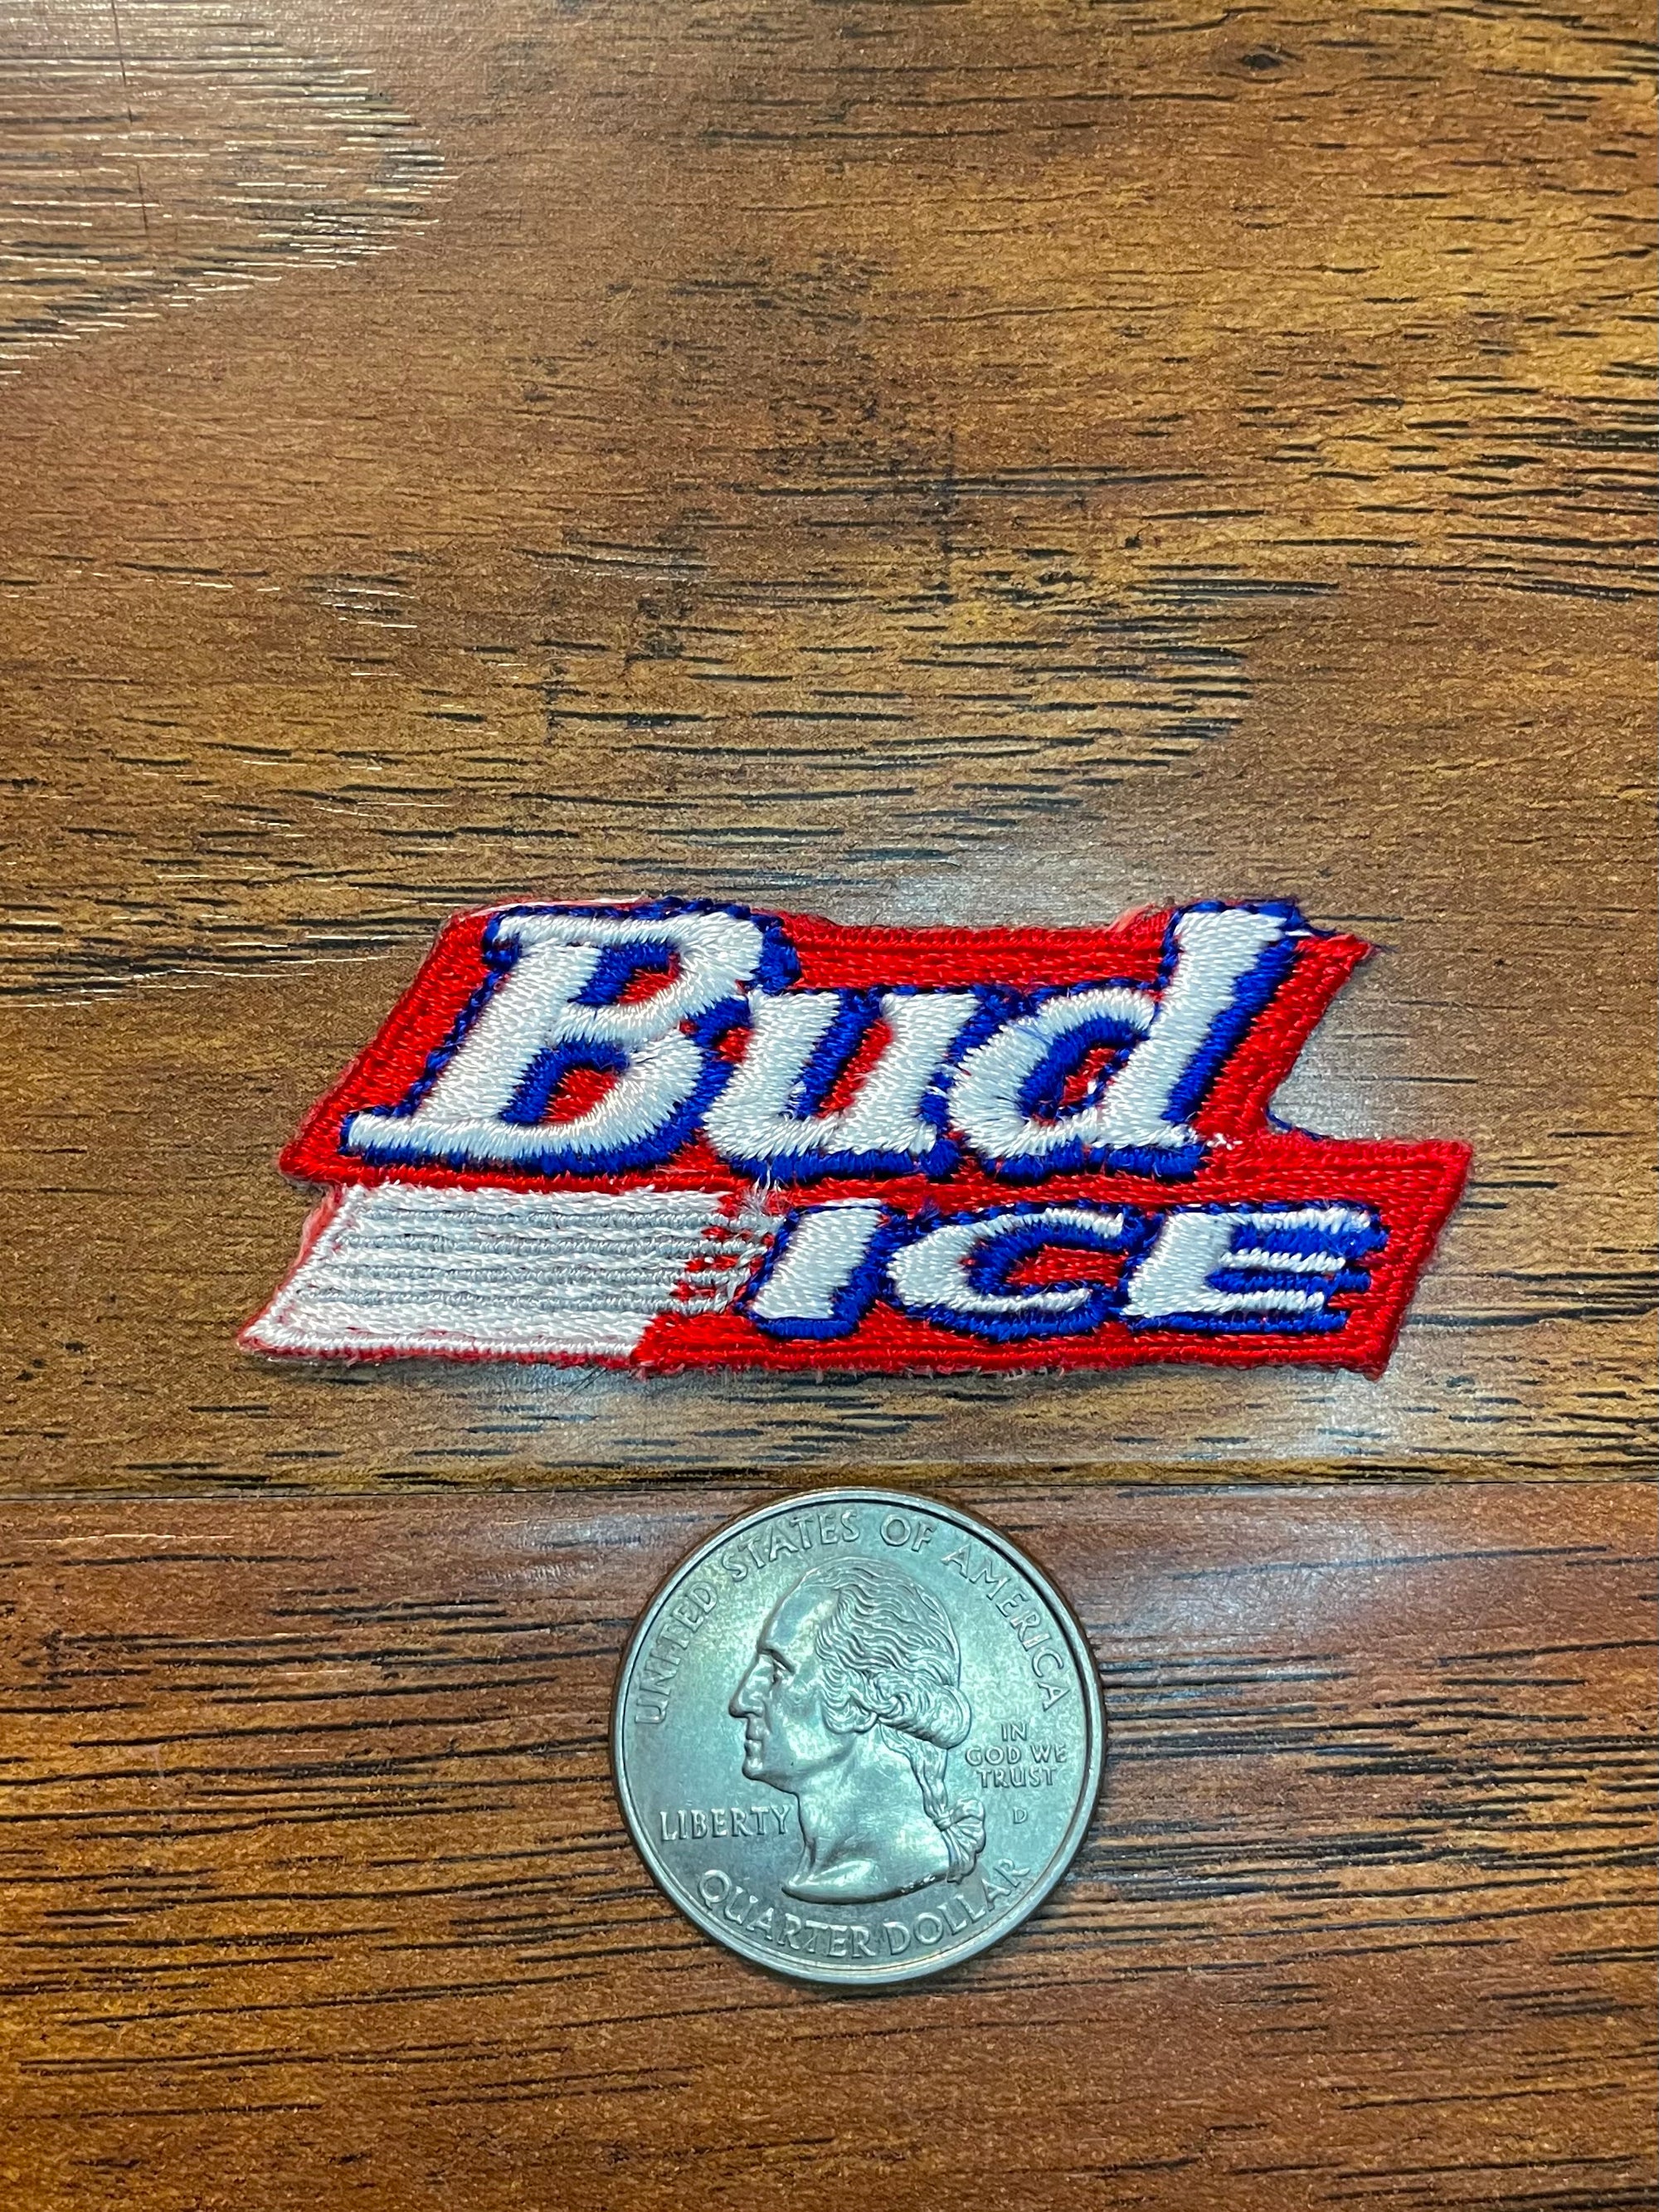 Vintage Bud Ice